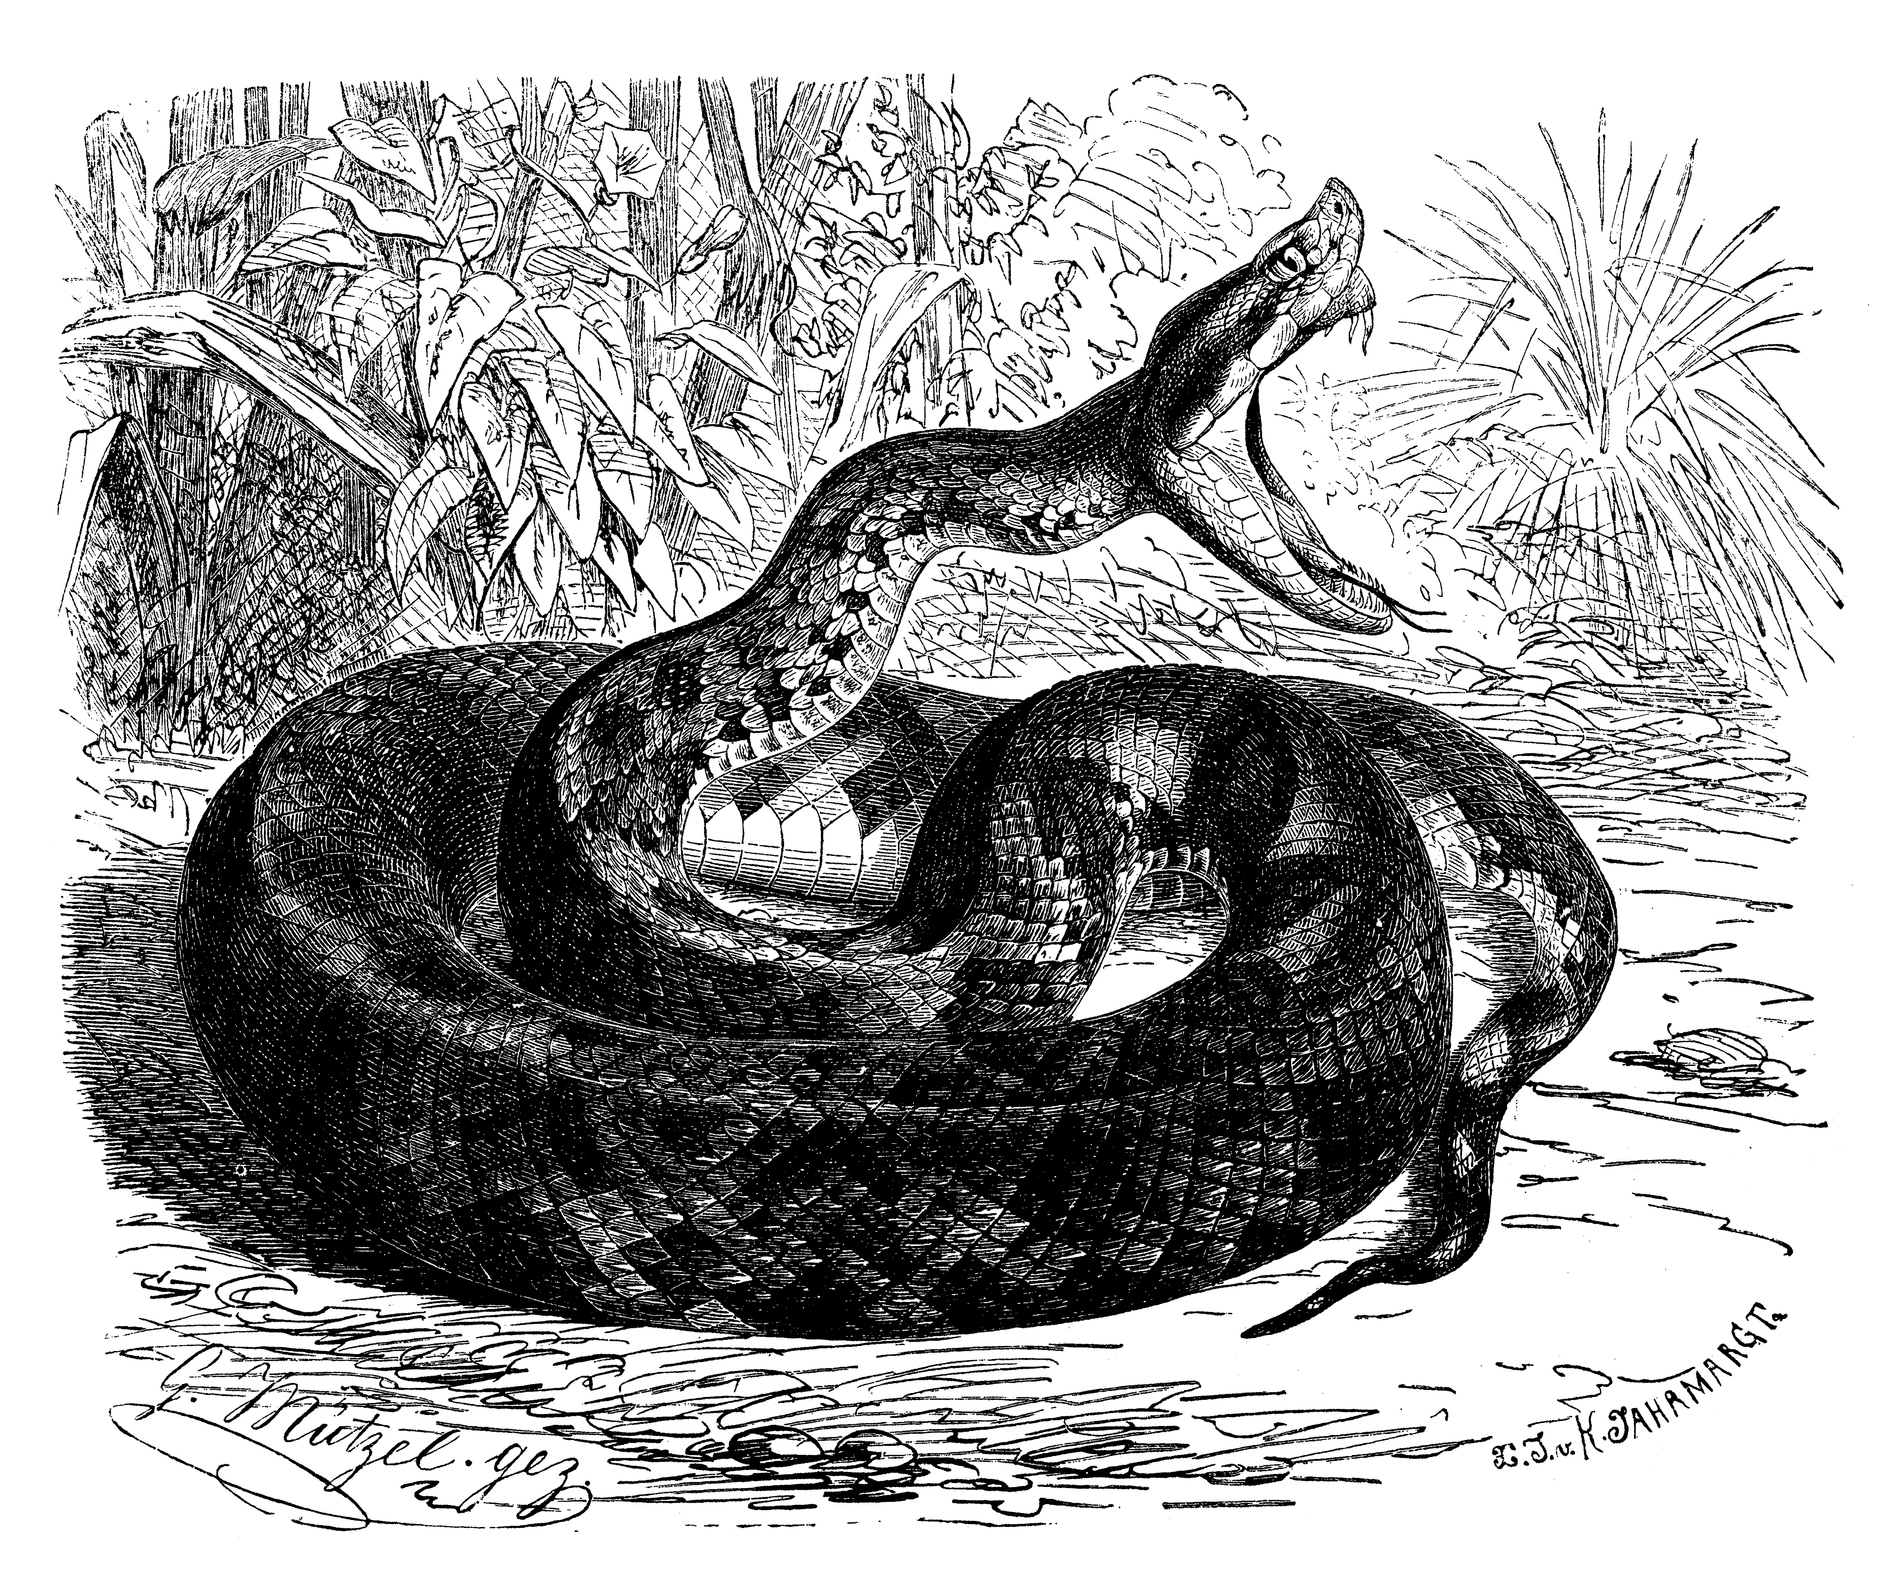 Le fer-de-lance est un serpent venimeux de la Martinique.